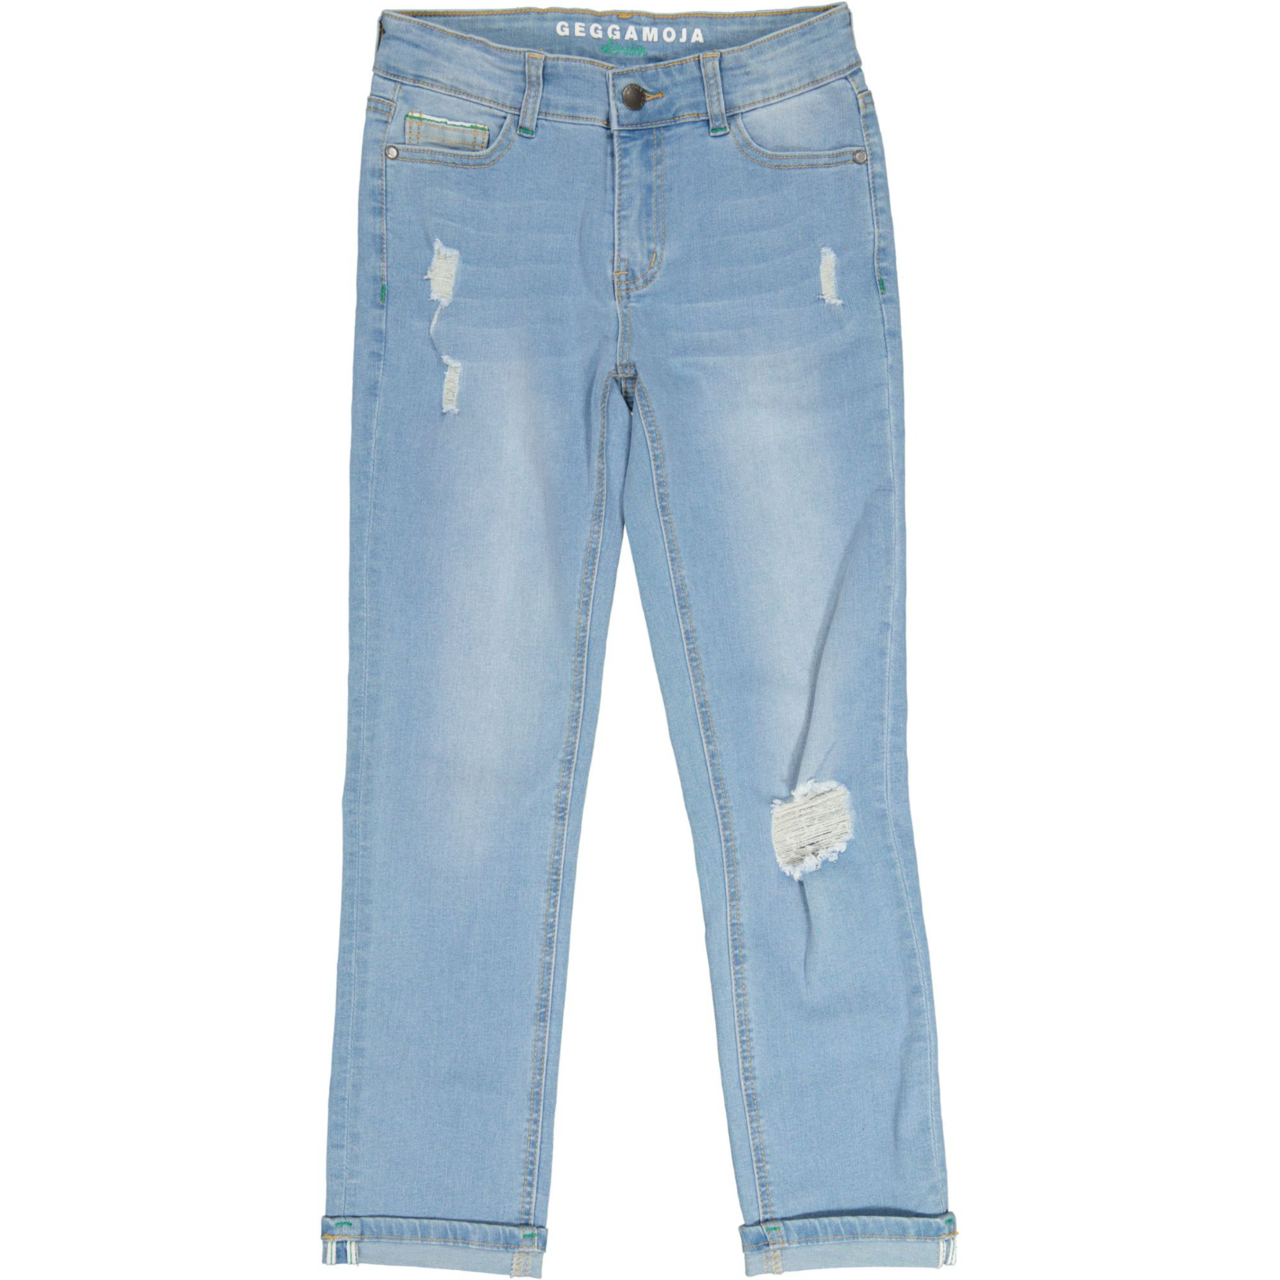 Unisex loose fit jeans Denim blue wash 146/152